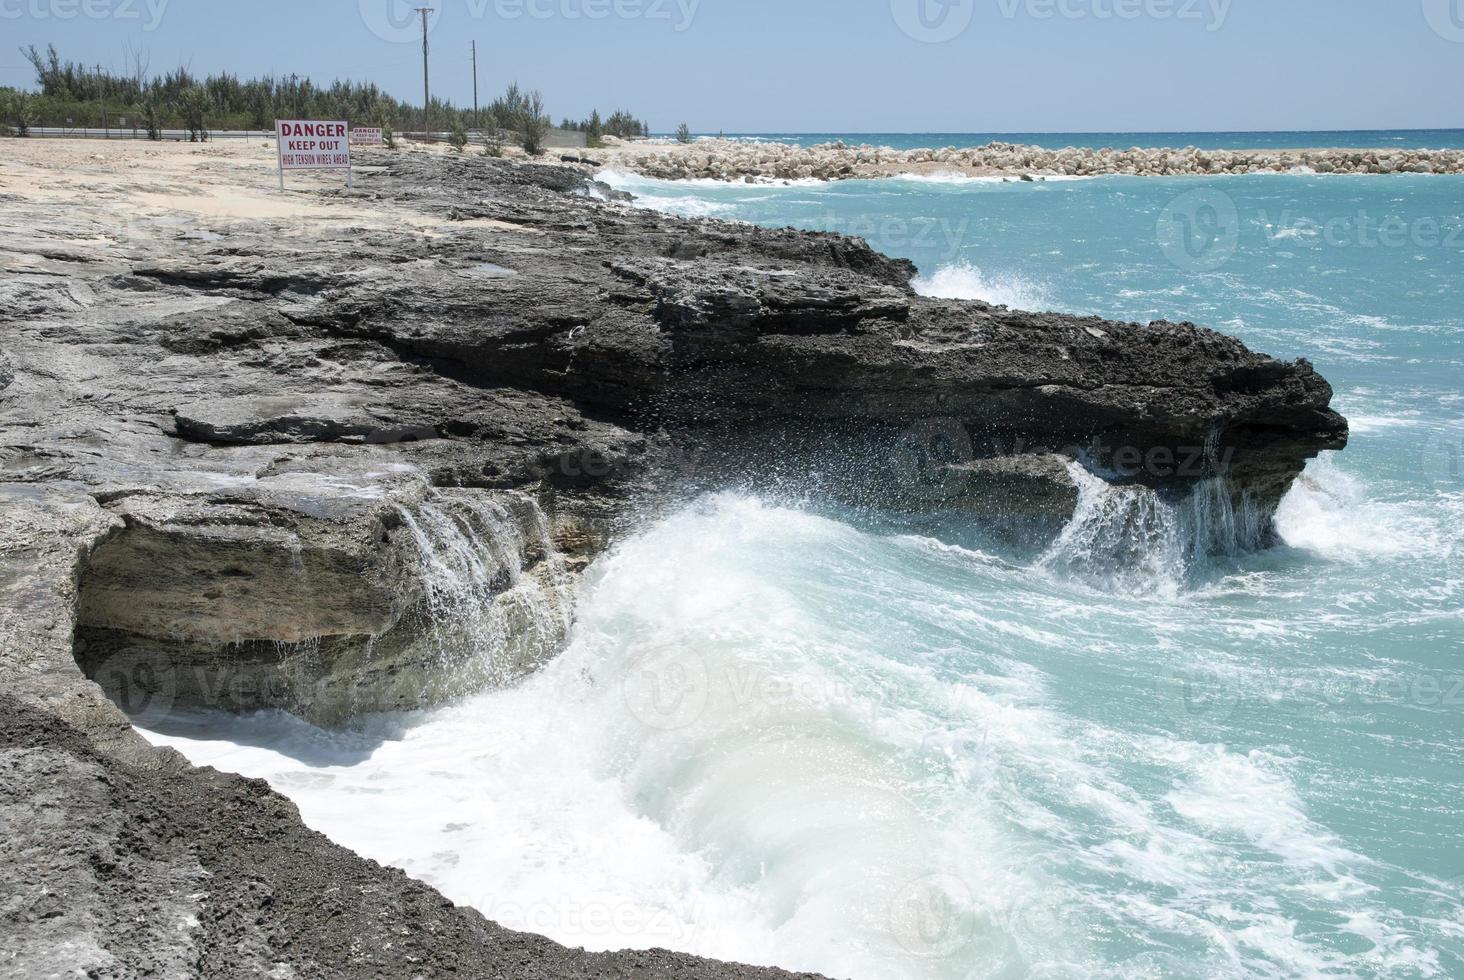 grandioso bahama isla advertencia señales y olas foto